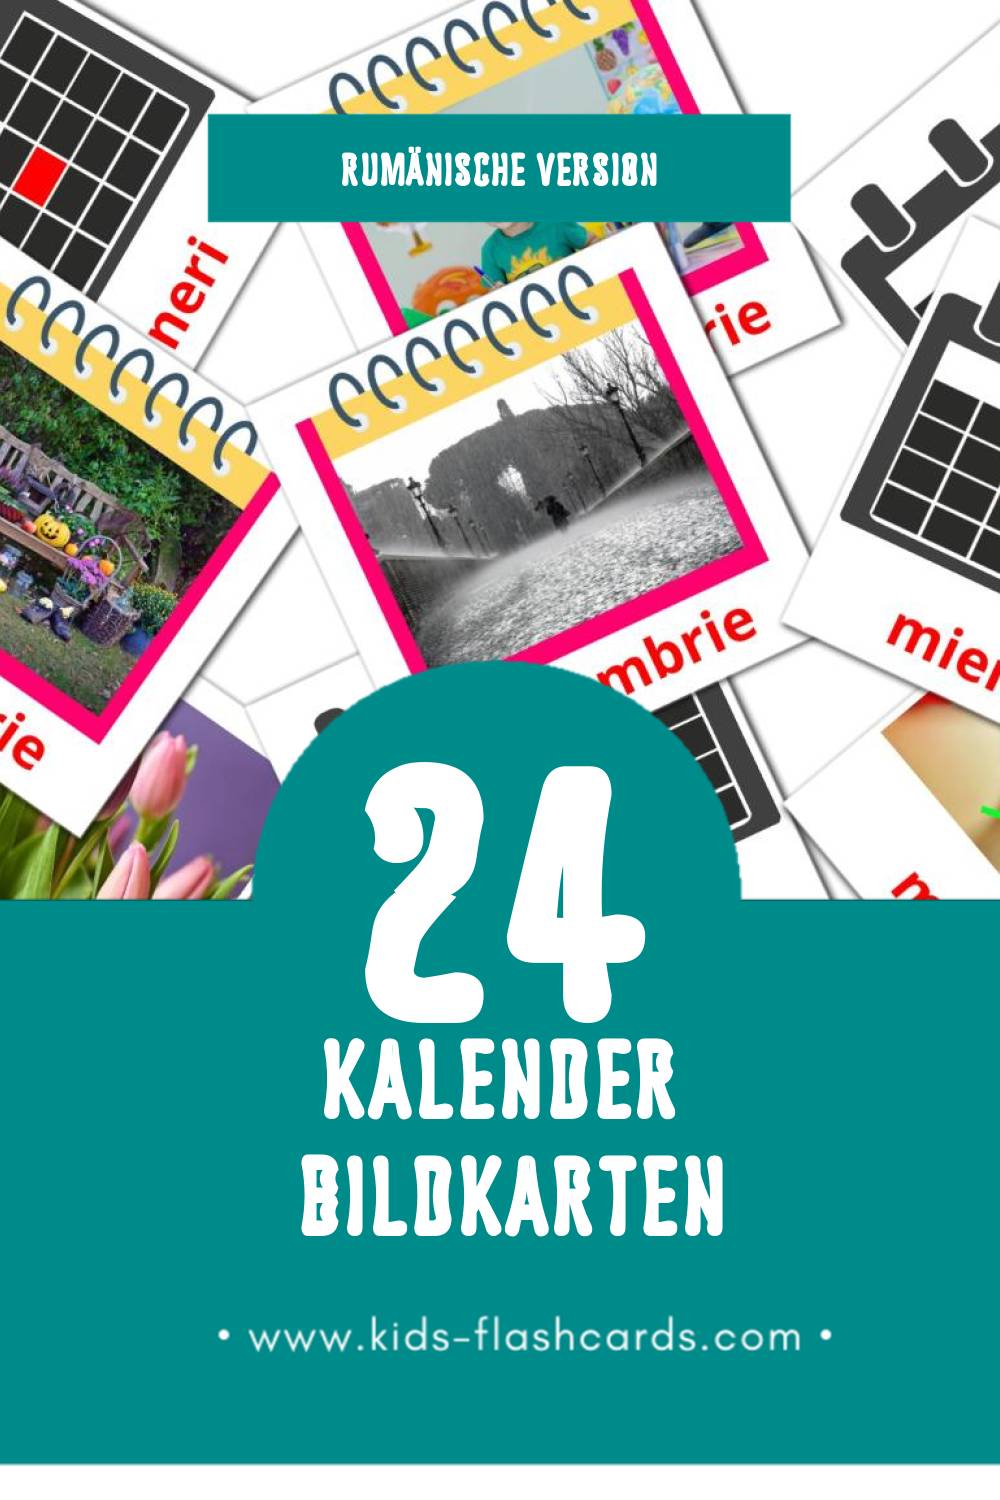 Visual Calendar Flashcards für Kleinkinder (24 Karten in Rumänisch)